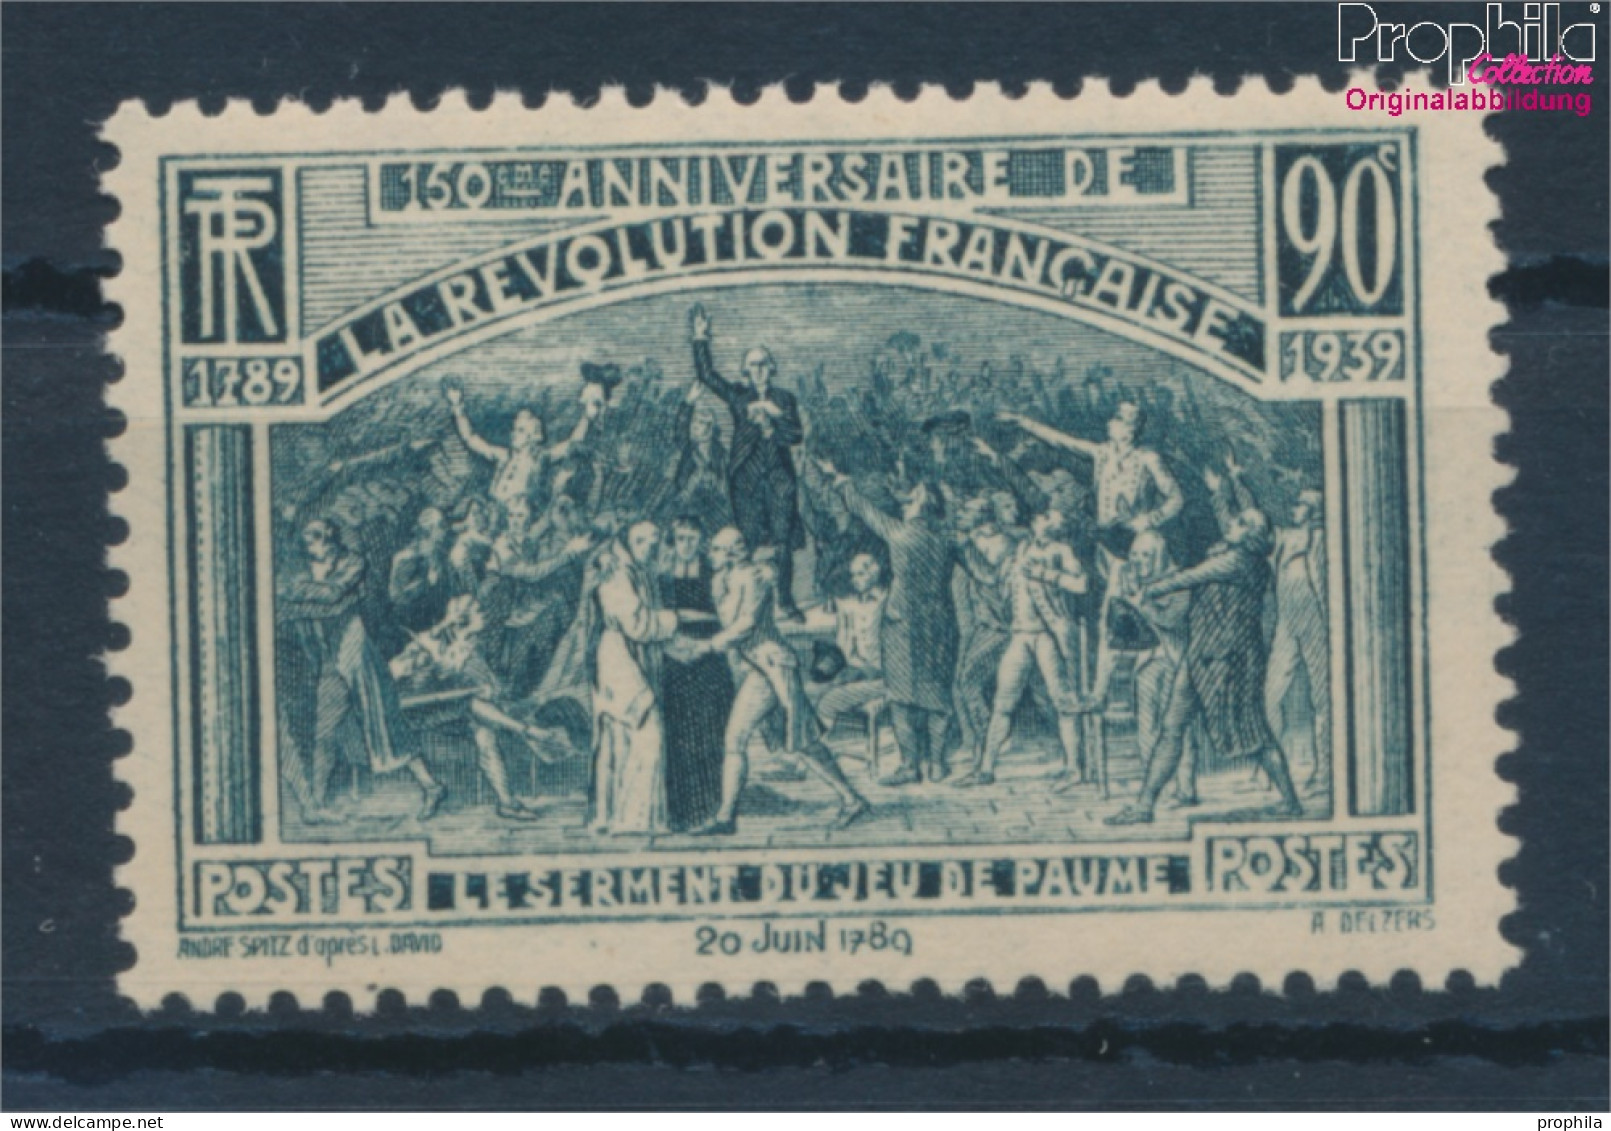 Frankreich 457 (kompl.Ausg.) Postfrisch 1939 Französische Revolution (10354719 - Neufs